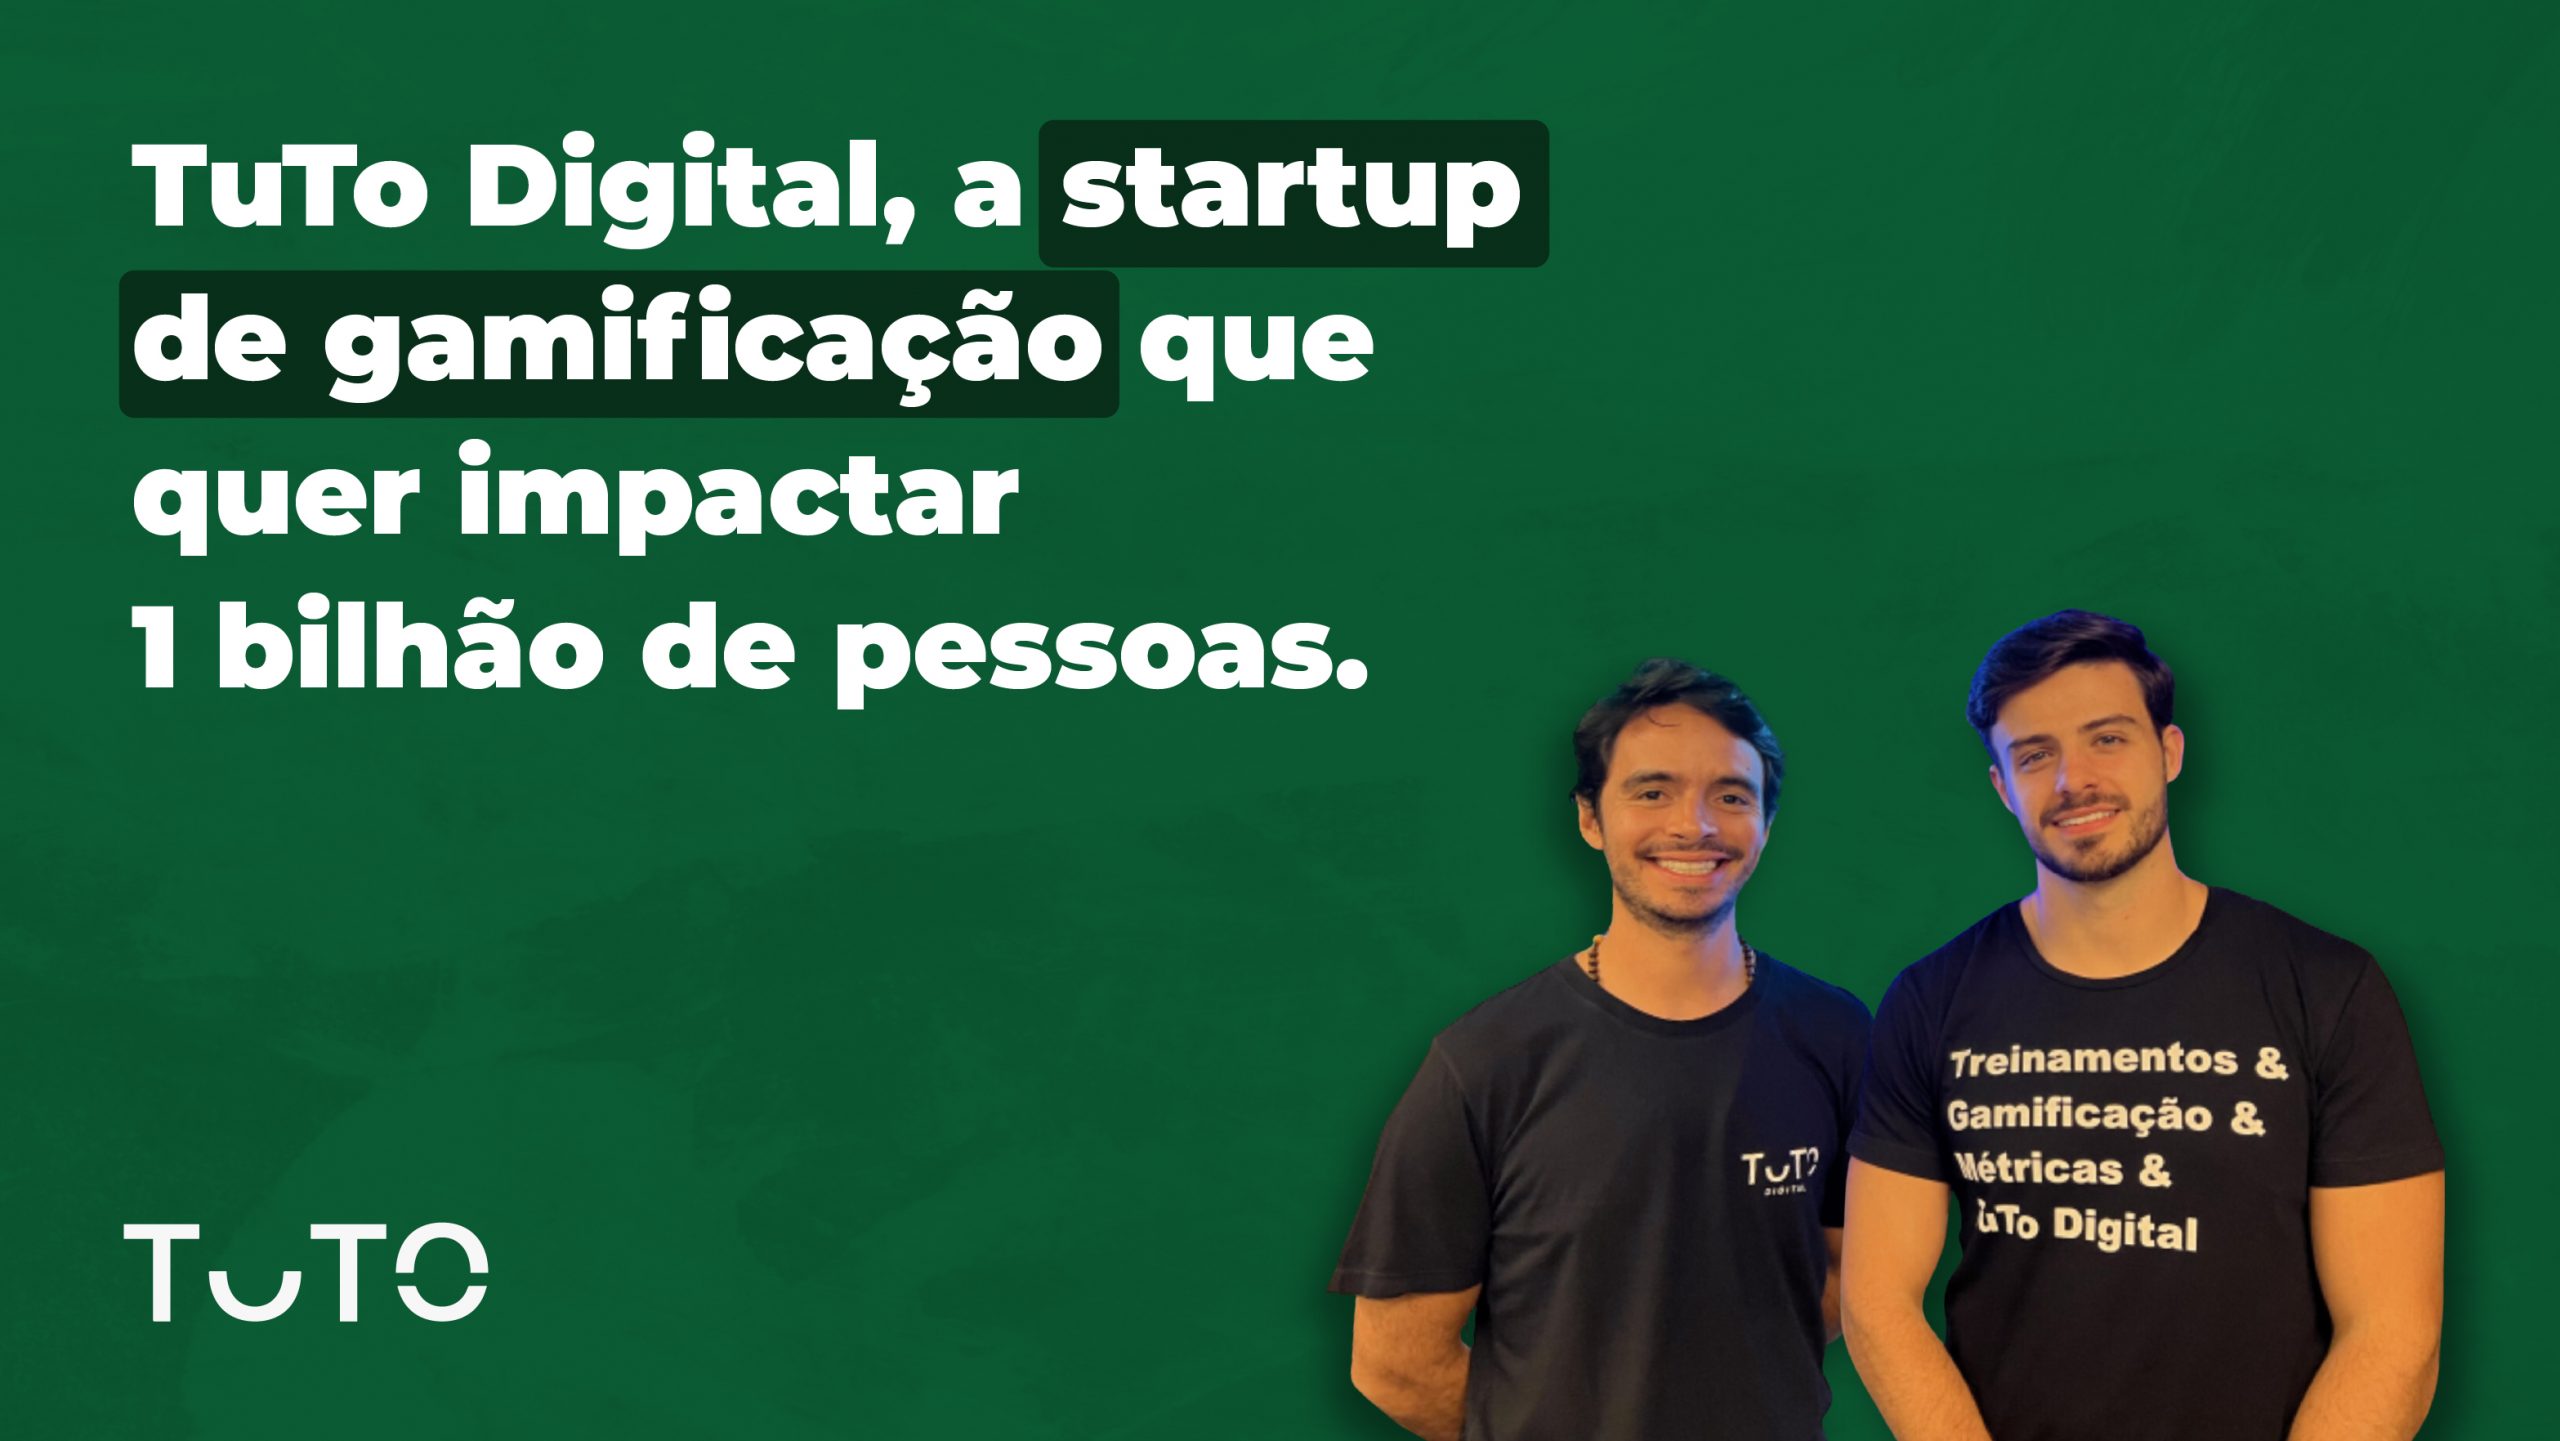 TuTo Digital, a startup de gamificação que quer impactar 1 bilhão de pessoas